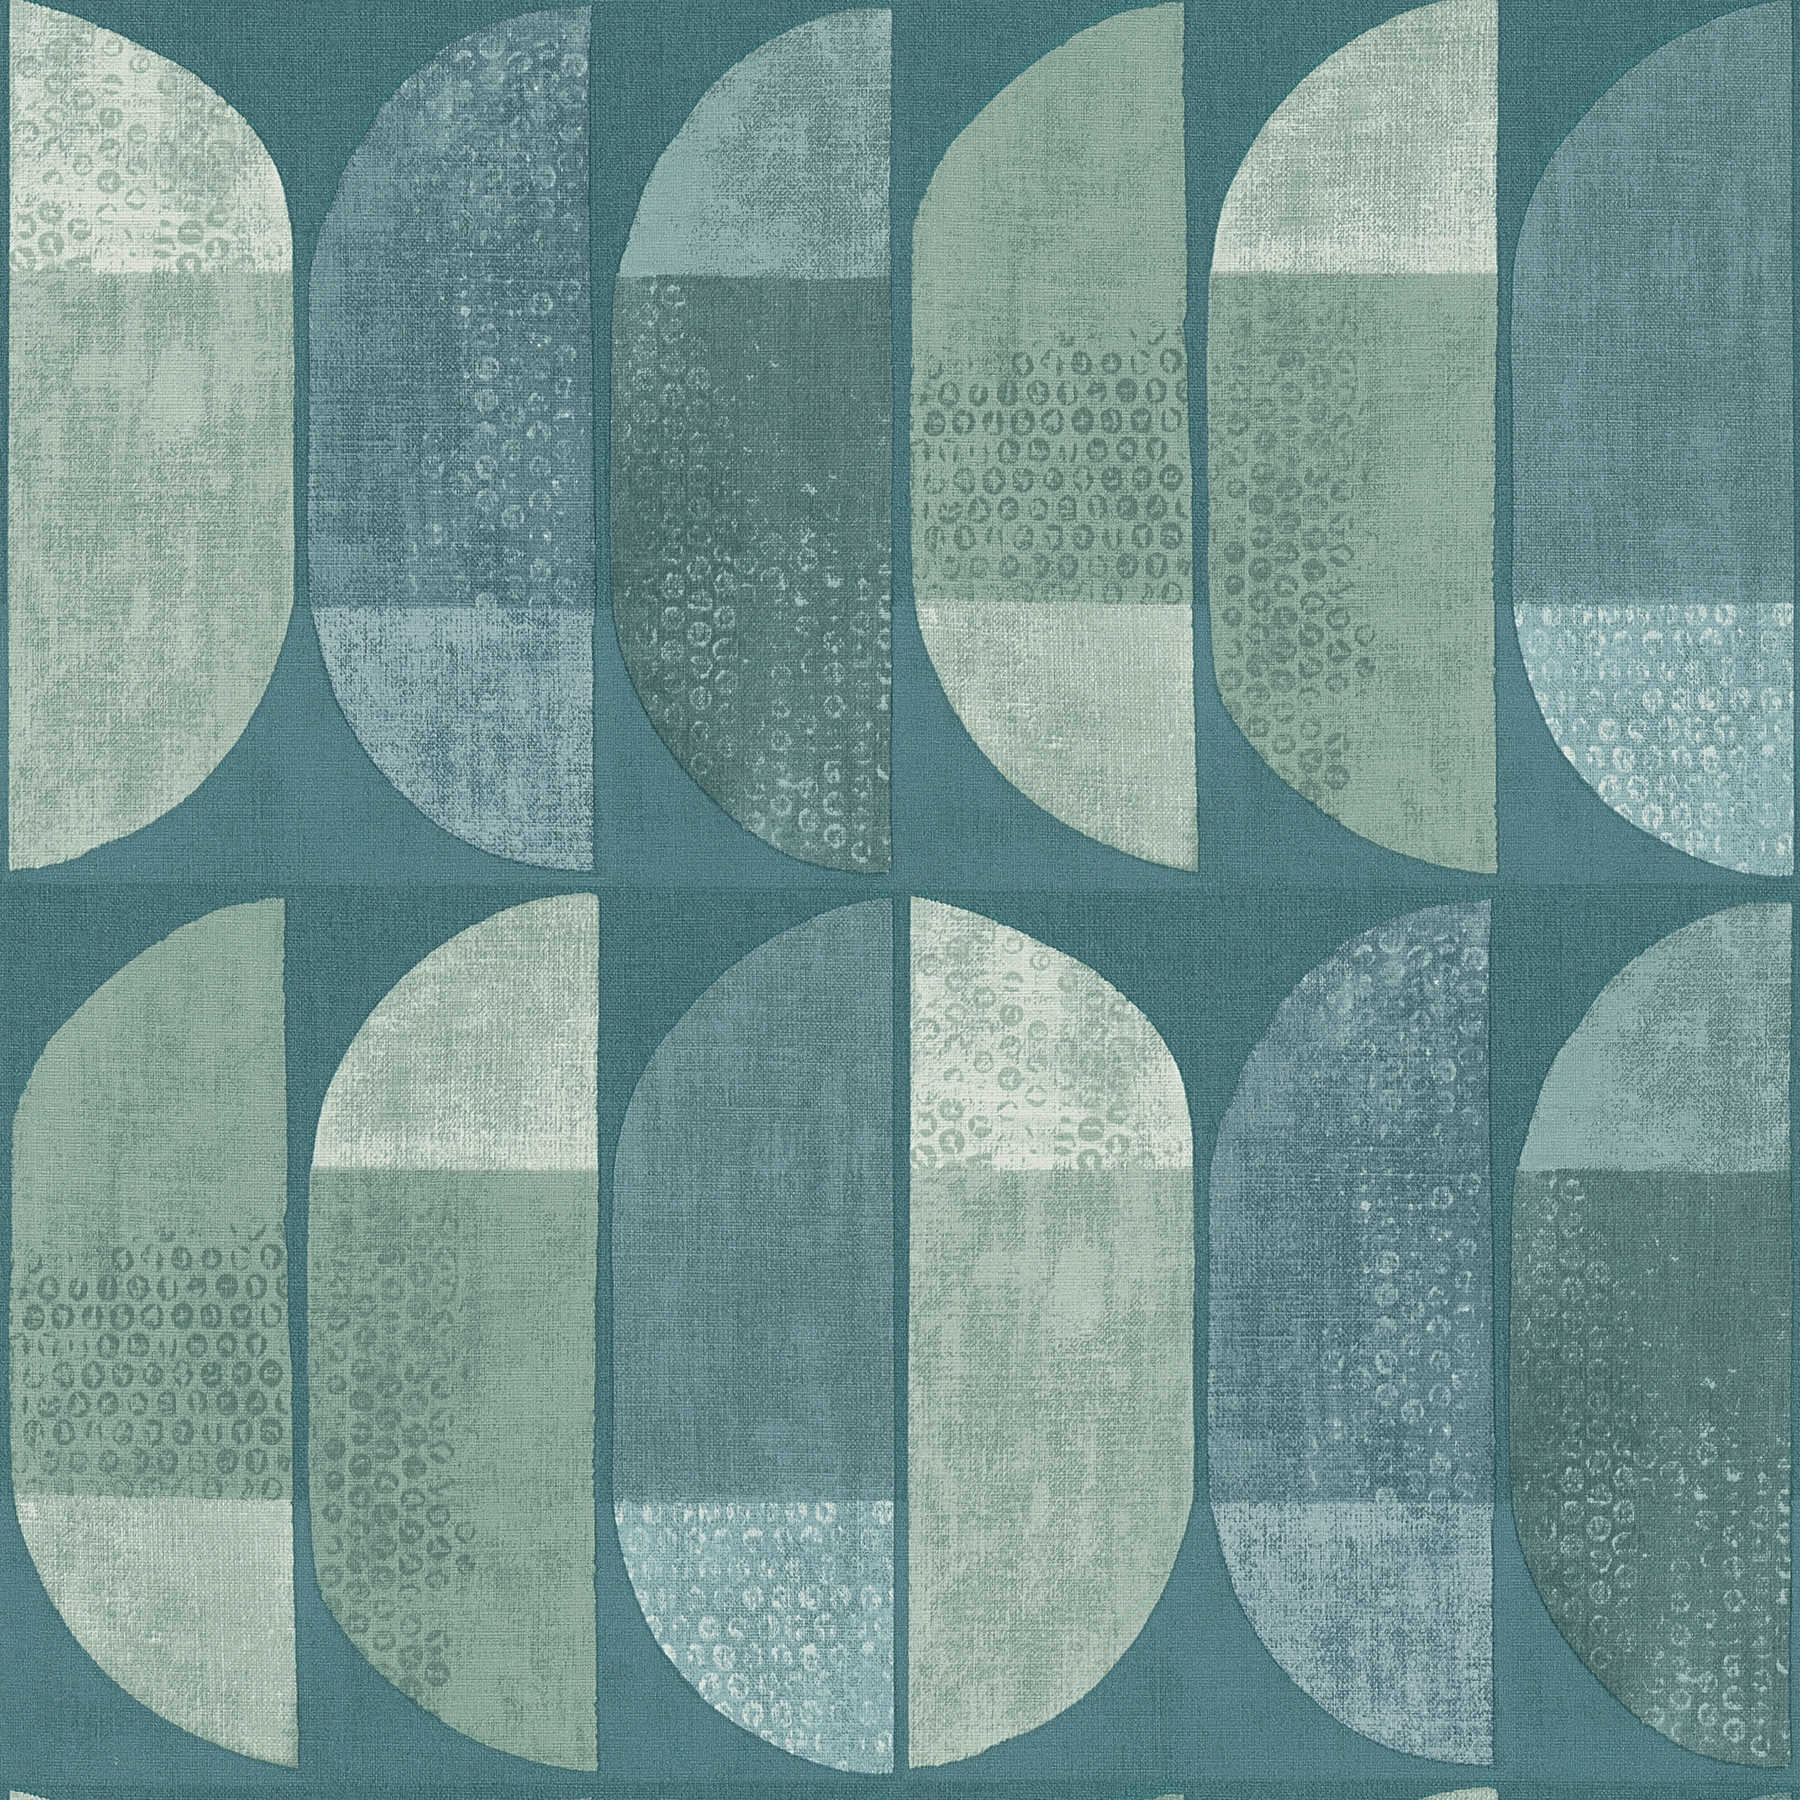 Wallpaper geometric retro pattern, Scandinavian style - blue, green
